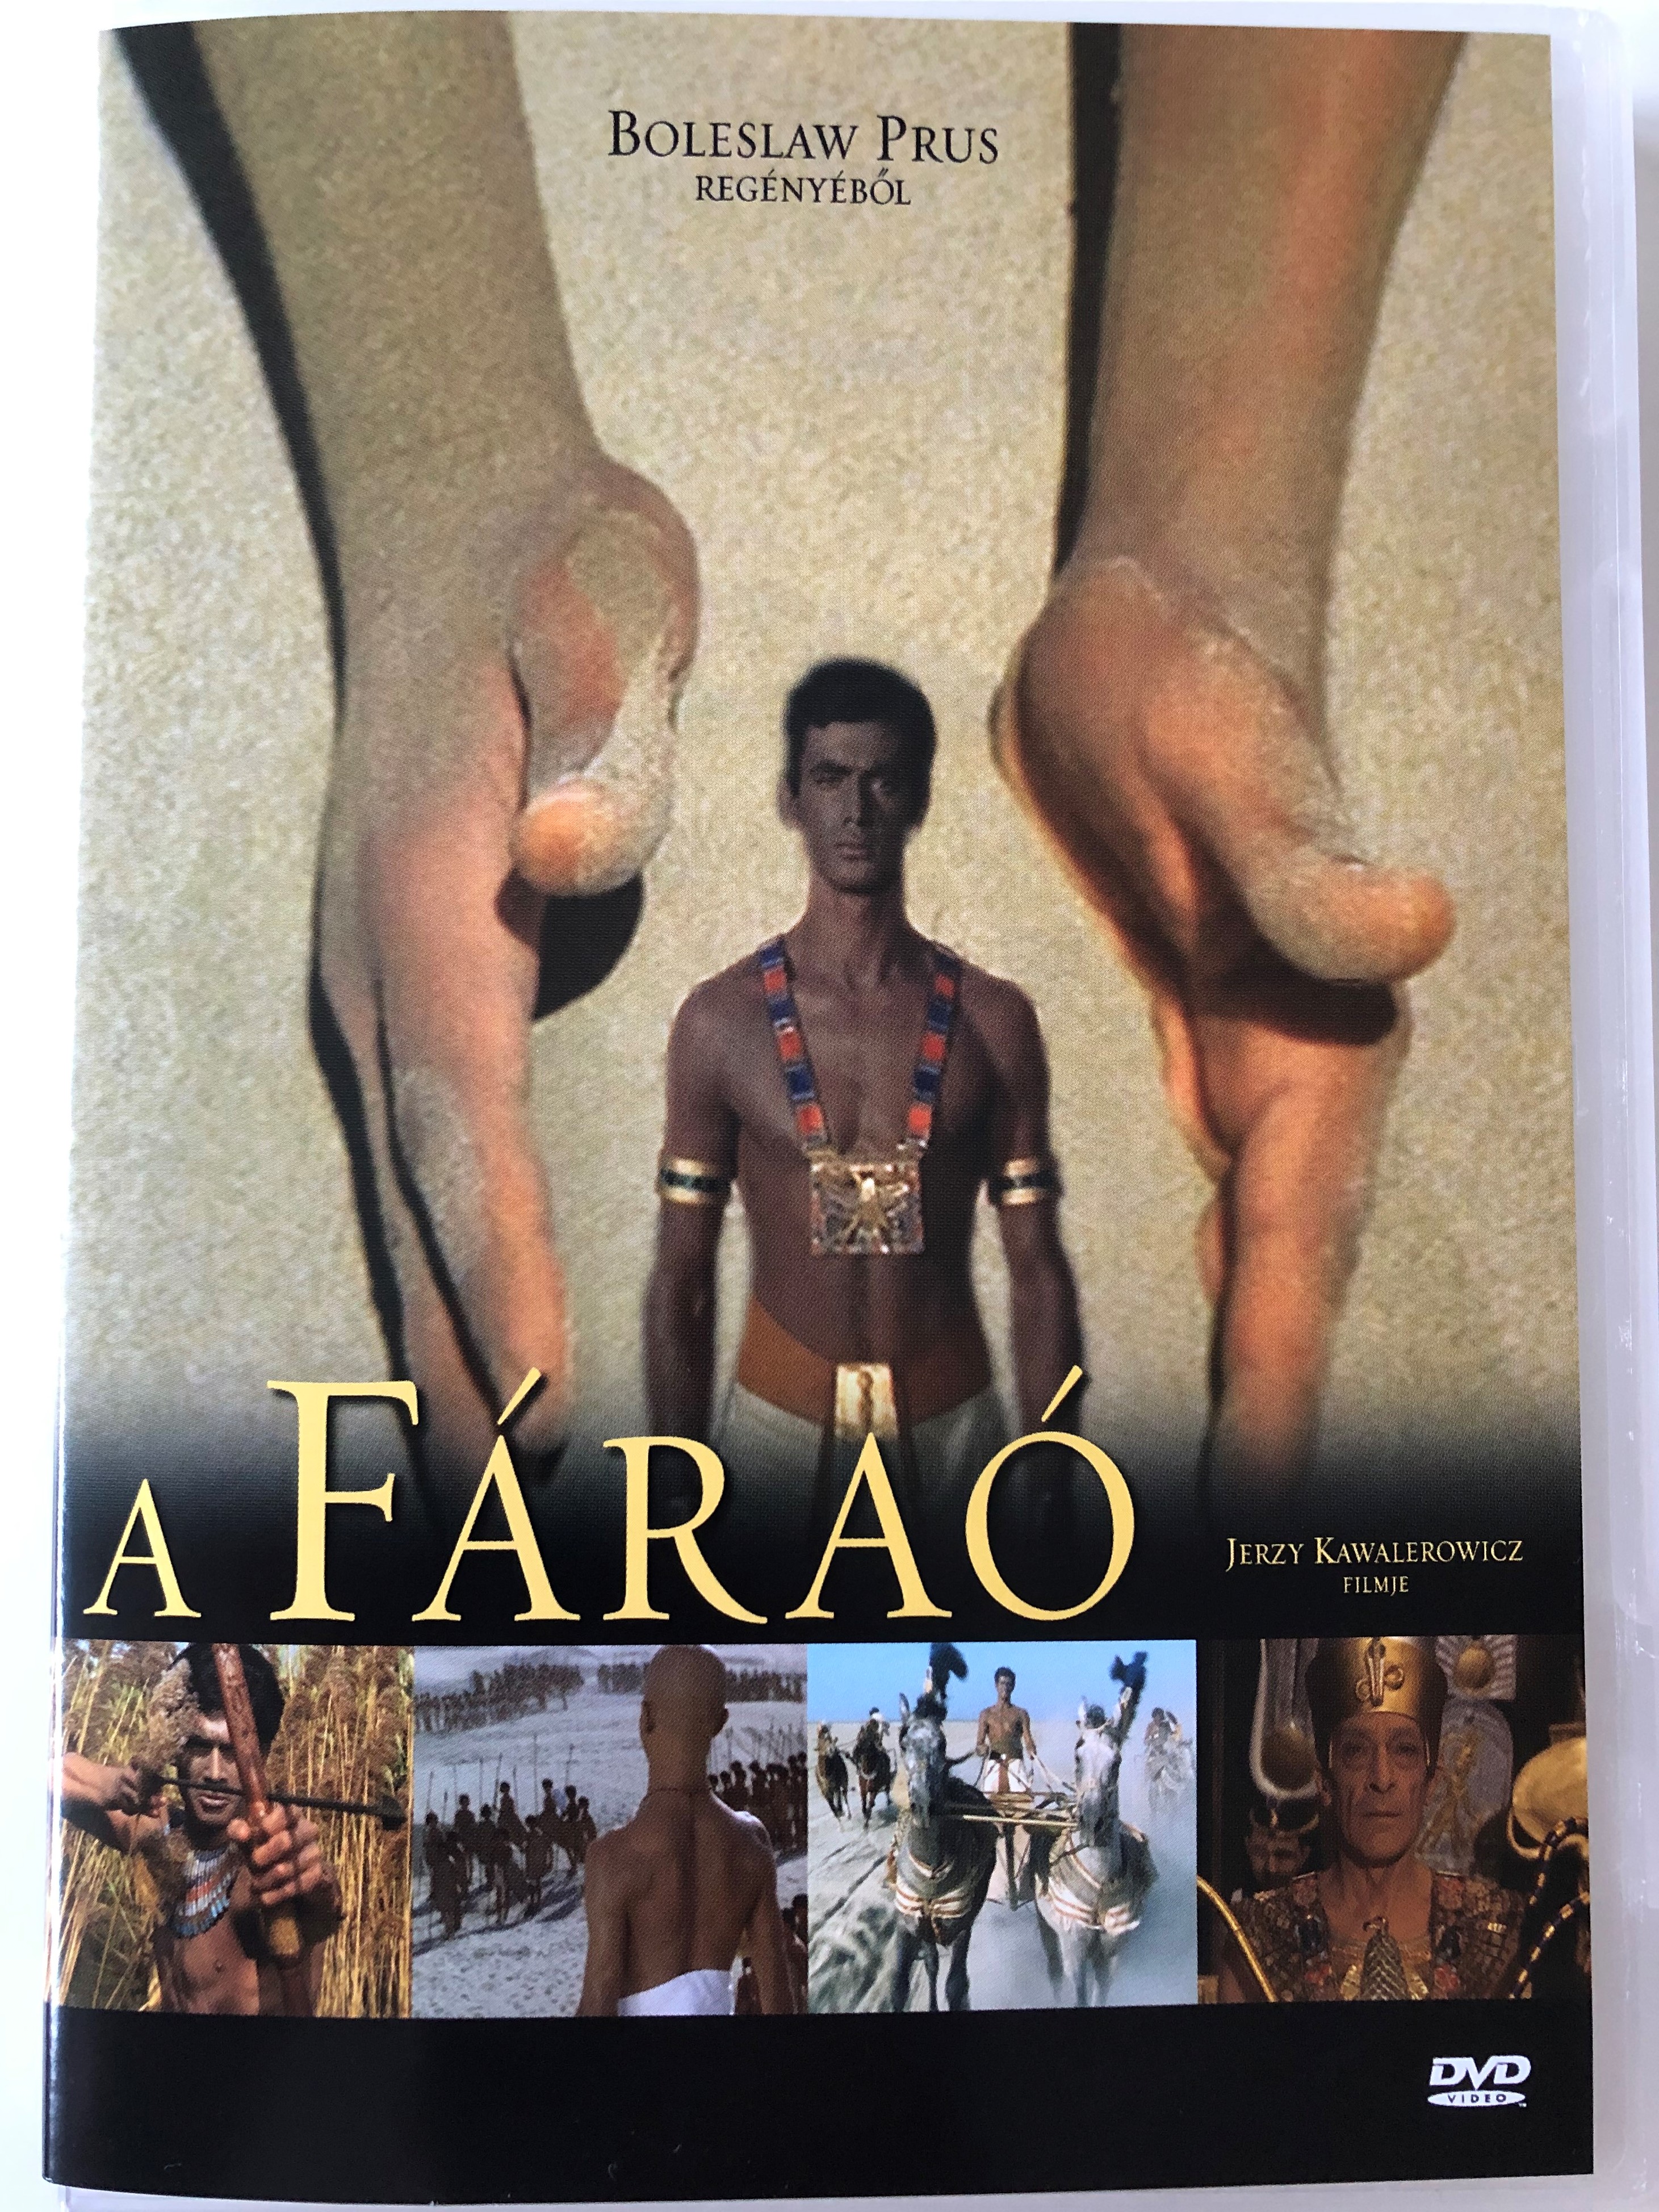 Faraon (Pharaoh) DVD 1966 A Fáraó 1